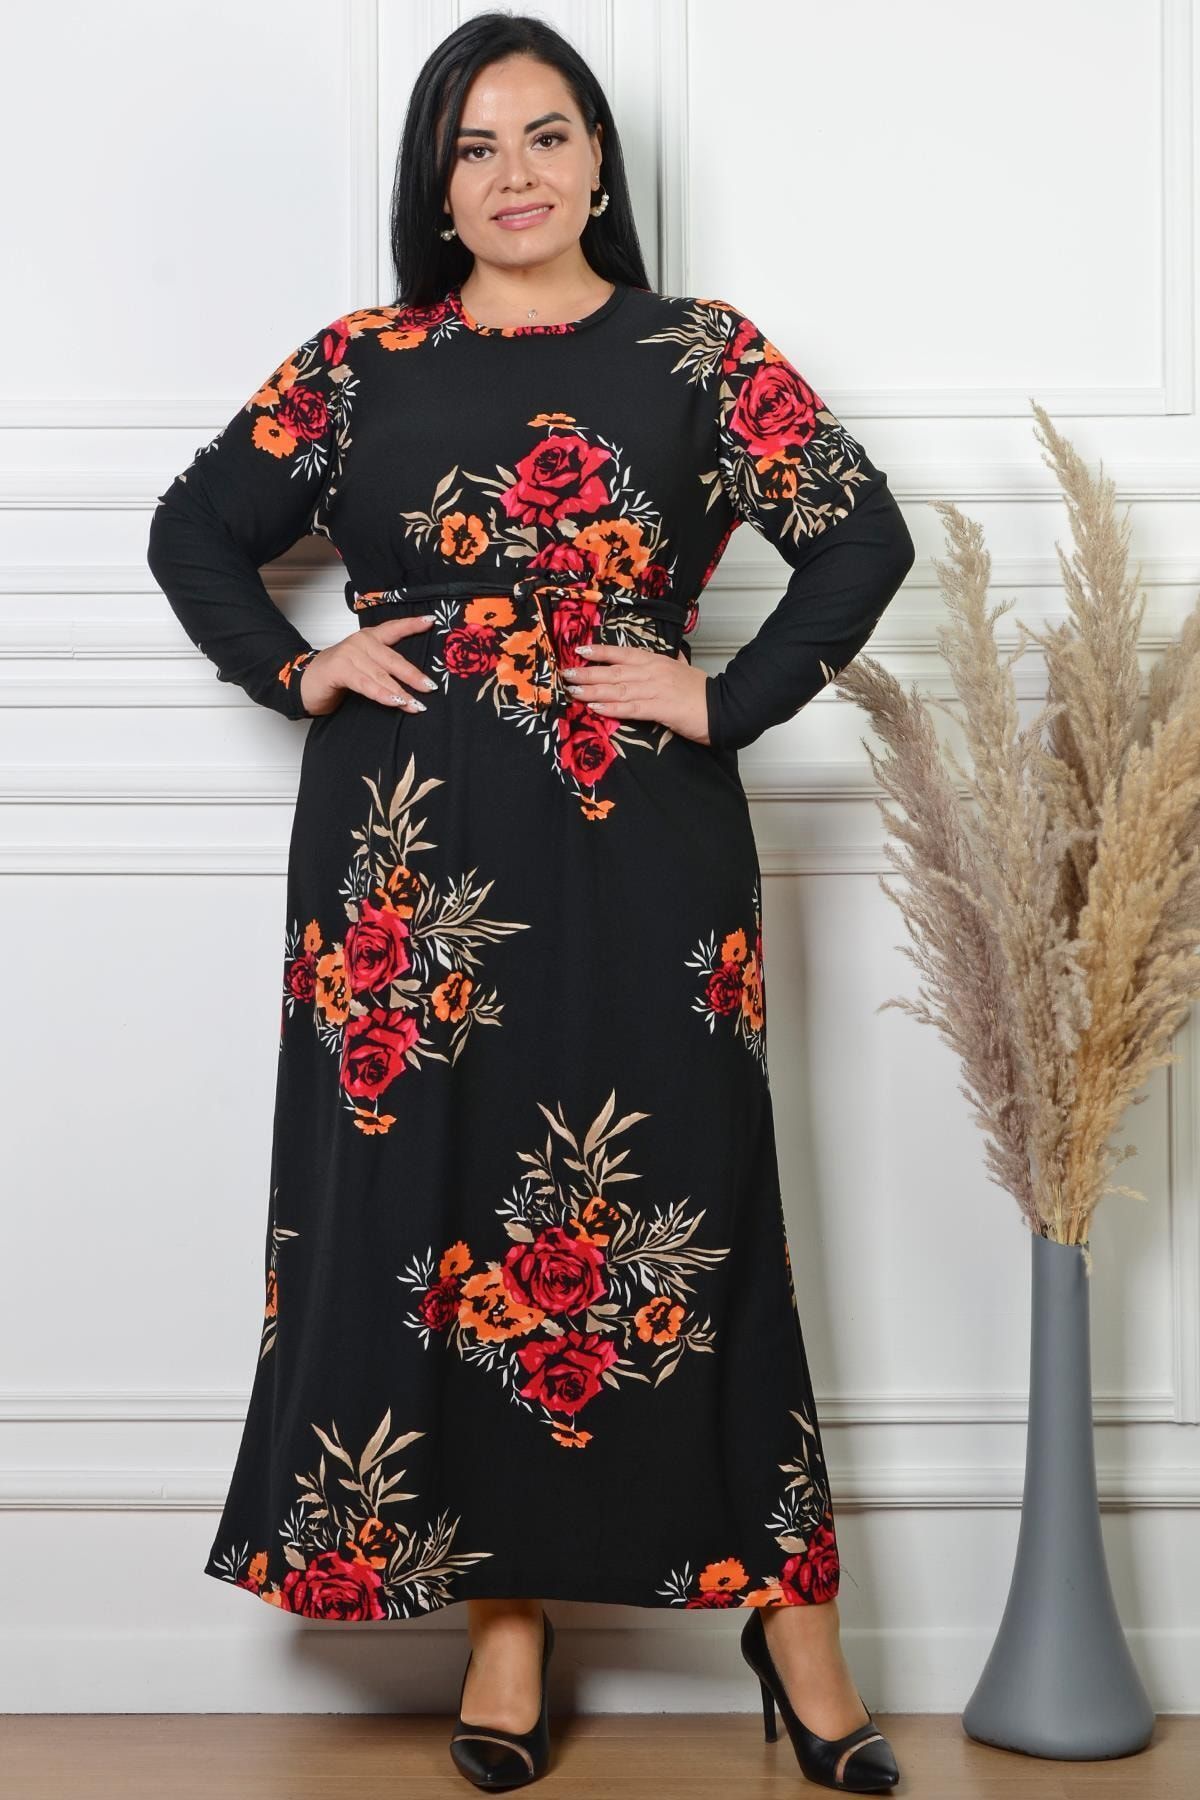 PİNKMARK Pınkmark Kadın Çiçek Desen Baskılı Siyah Krep Büyük Beden Elbise Pmel25380